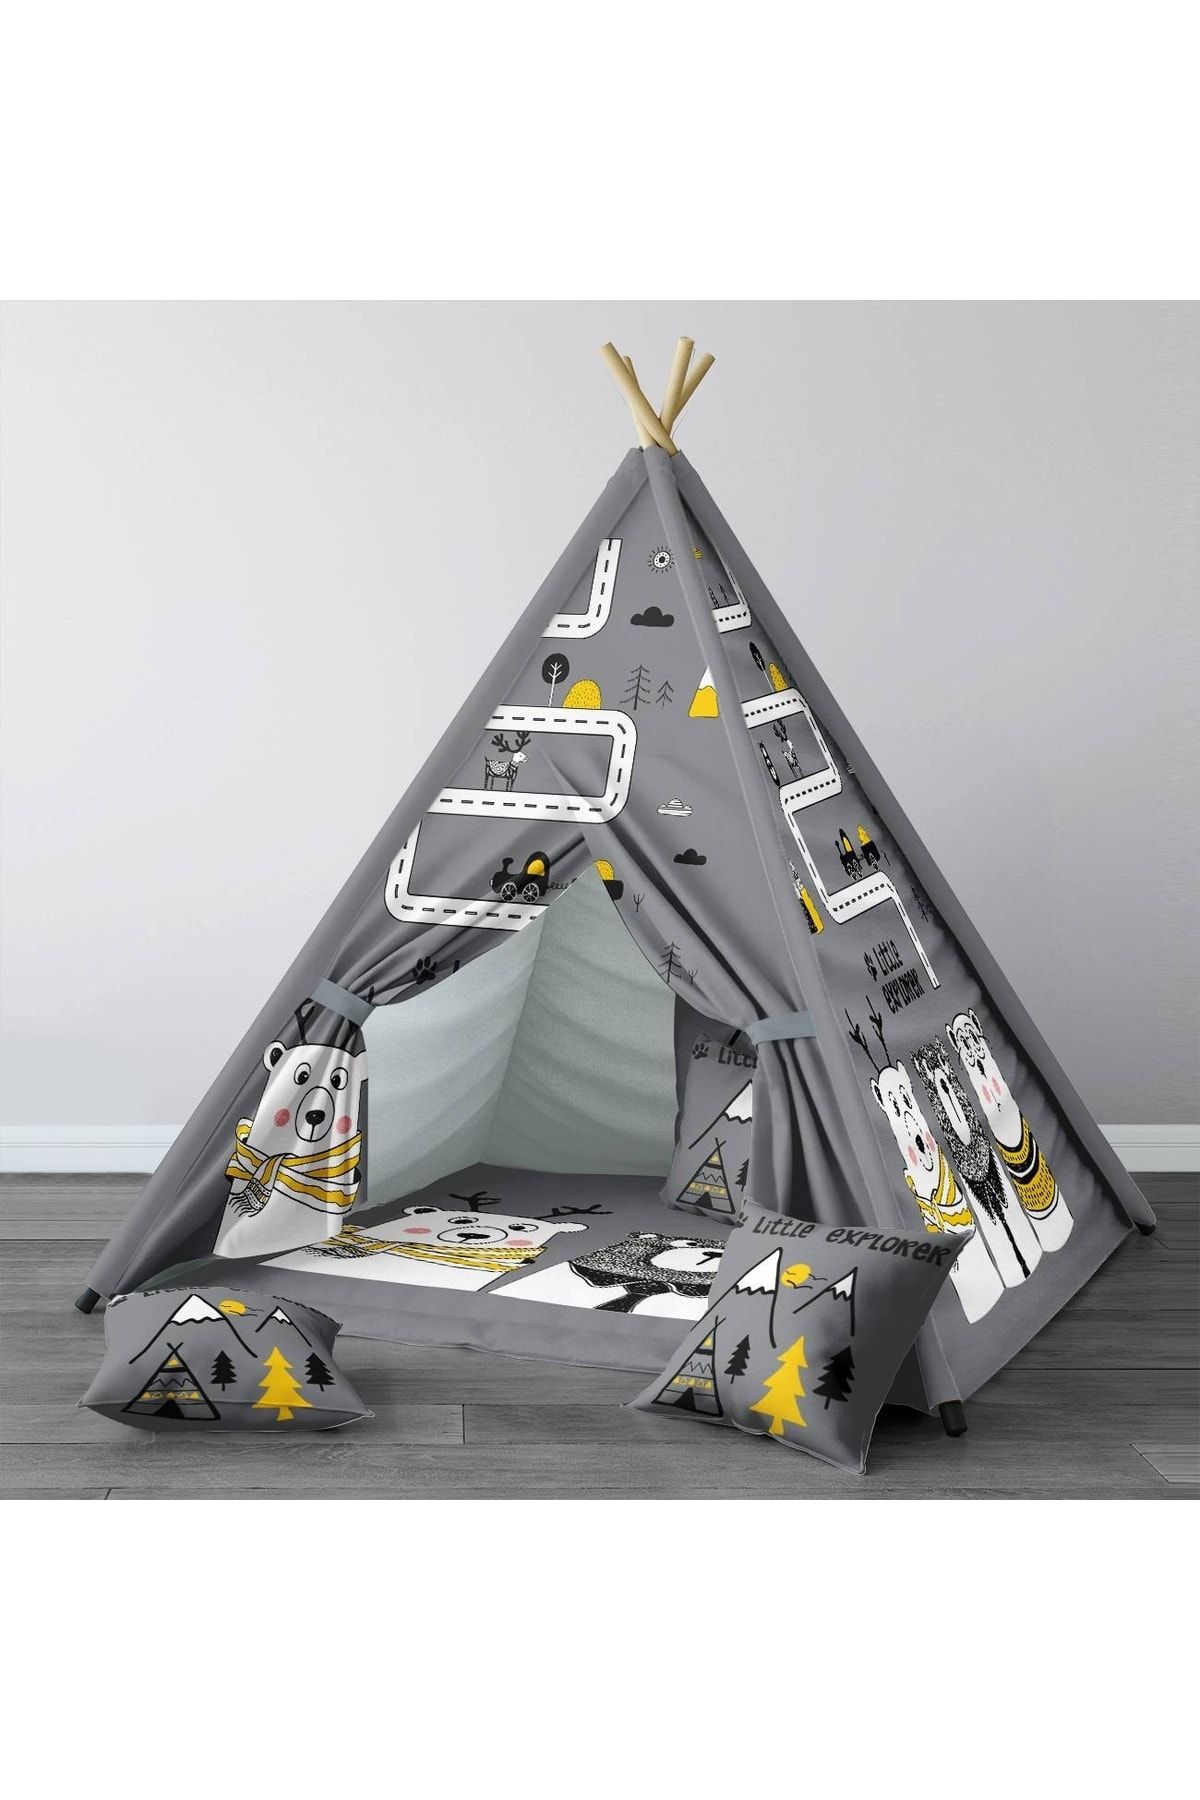 HET Concept Gri Bebek, Çocuk Odası Minderli/mindersiz Oyun Evi, Çadırı Model 0056